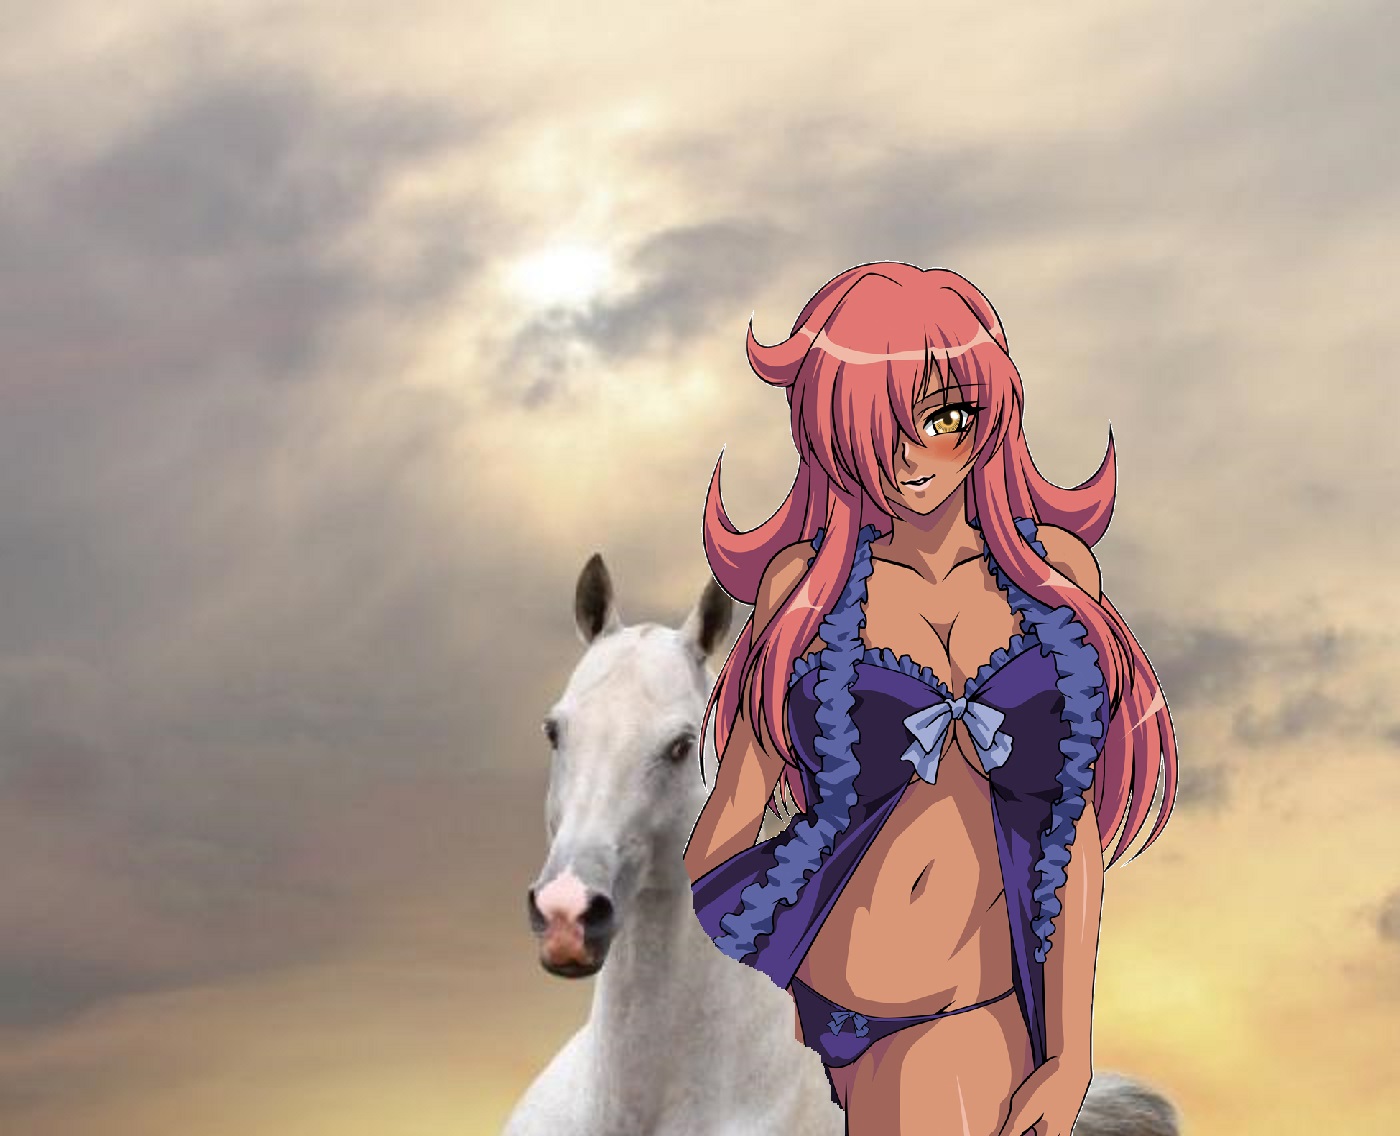 Zero No Tsukaima Fan Art: Kirche riding on her beautiful white horse.